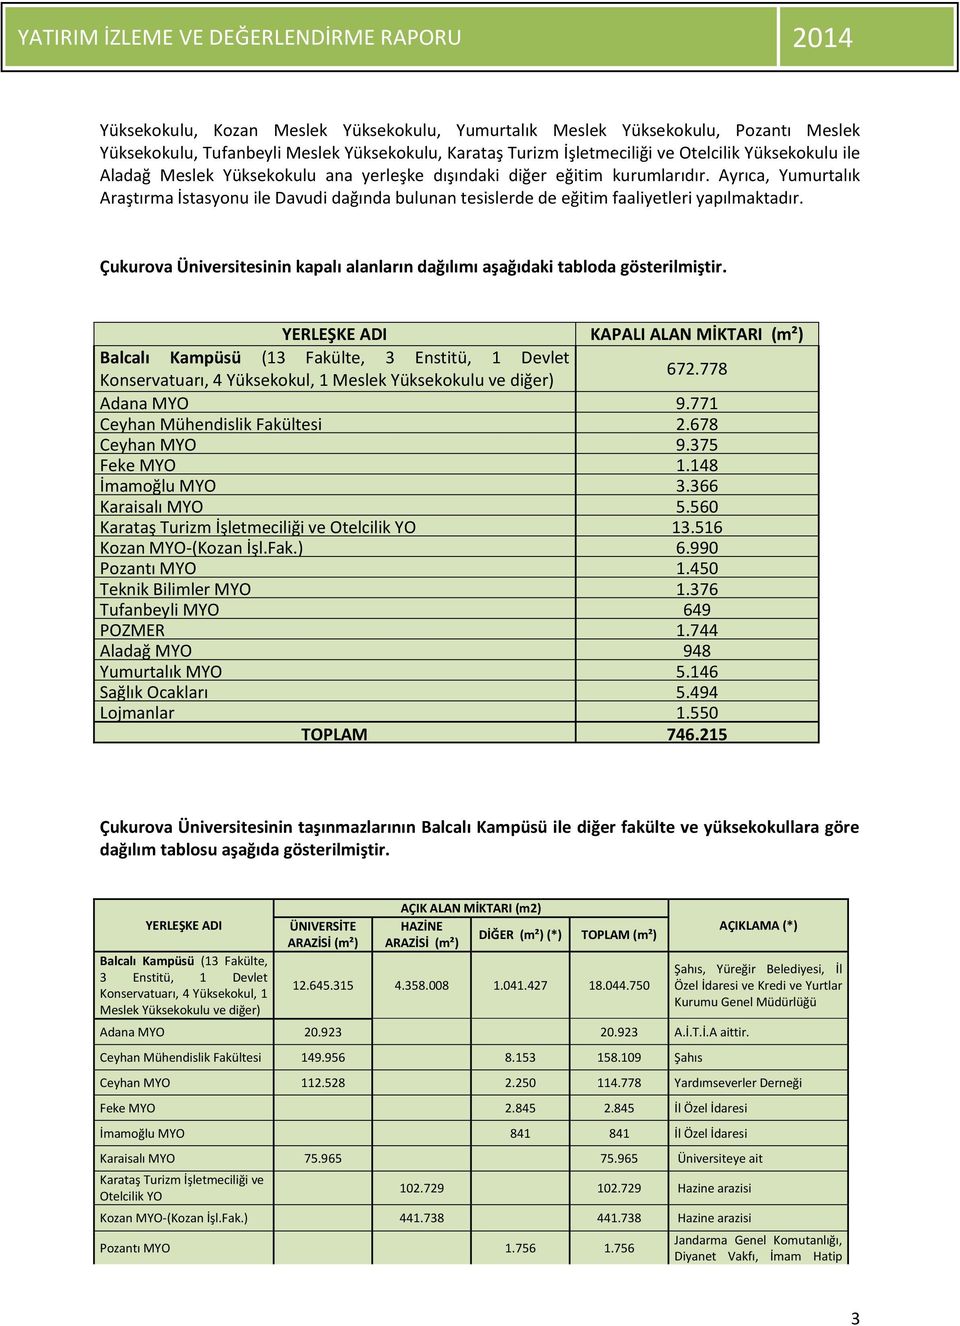 Çukurova Üniversitesinin kapalı alanların dağılımı aşağıdaki tabloda gösterilmiştir.